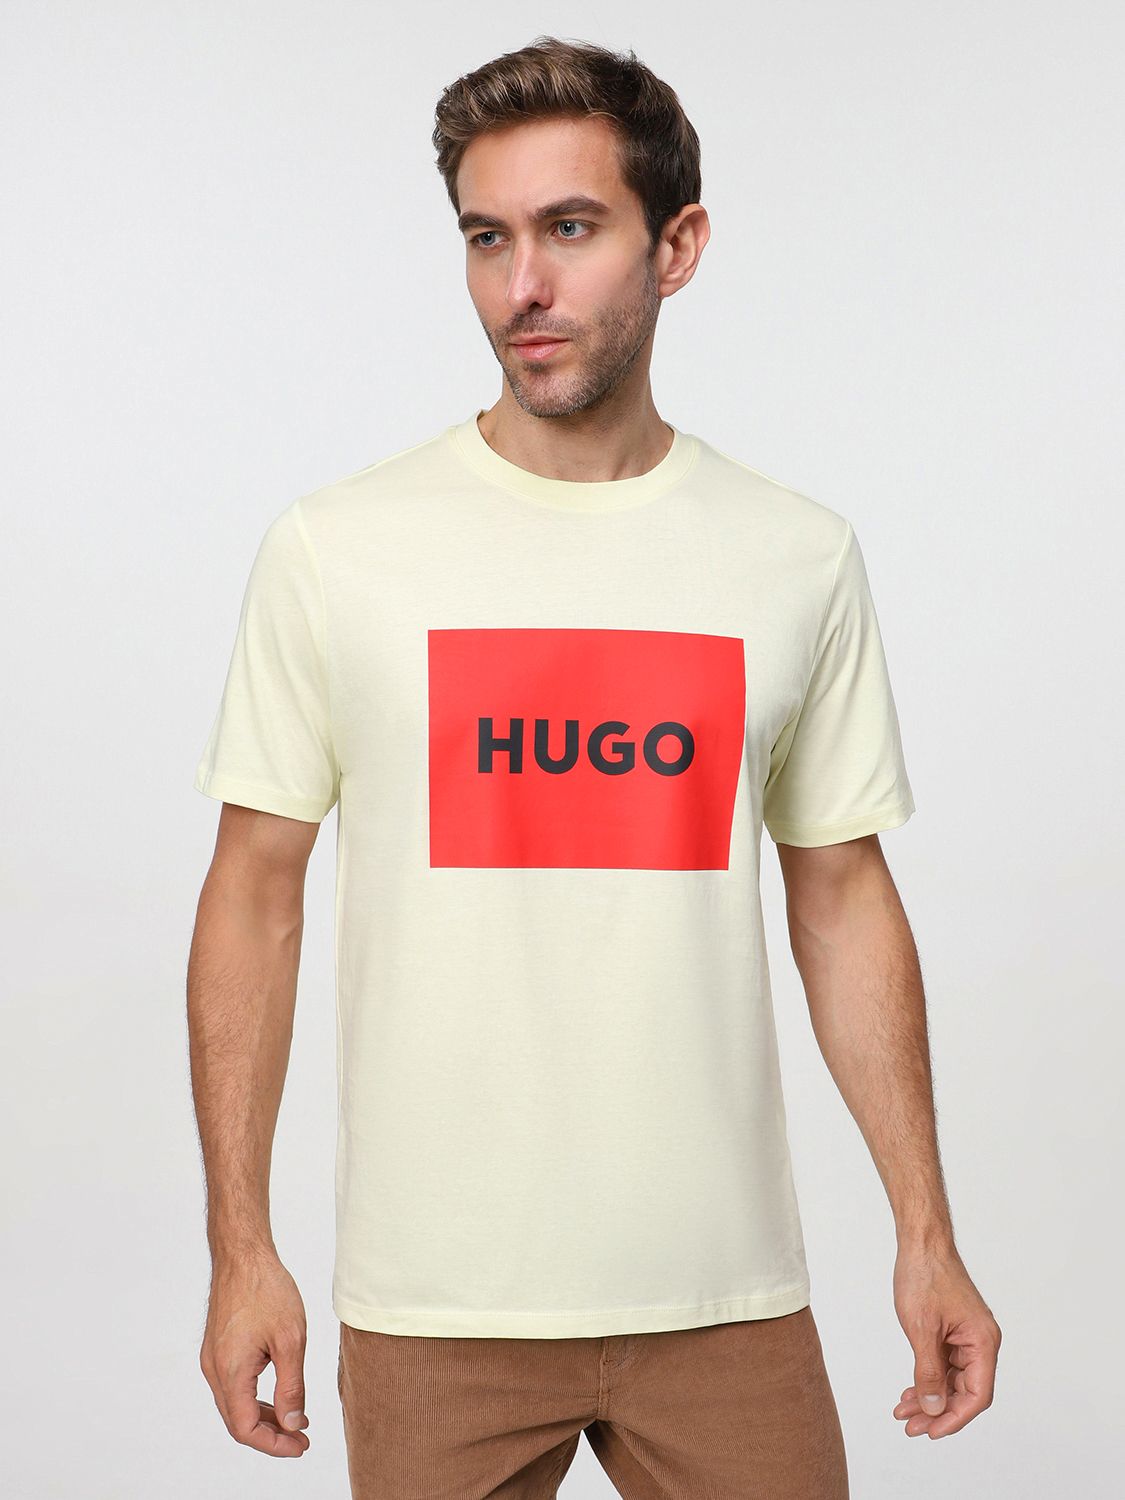 Hugo размеры. Футболка Хуго. Комплект футболок Hugo Regular. Купить футболку Hugo.